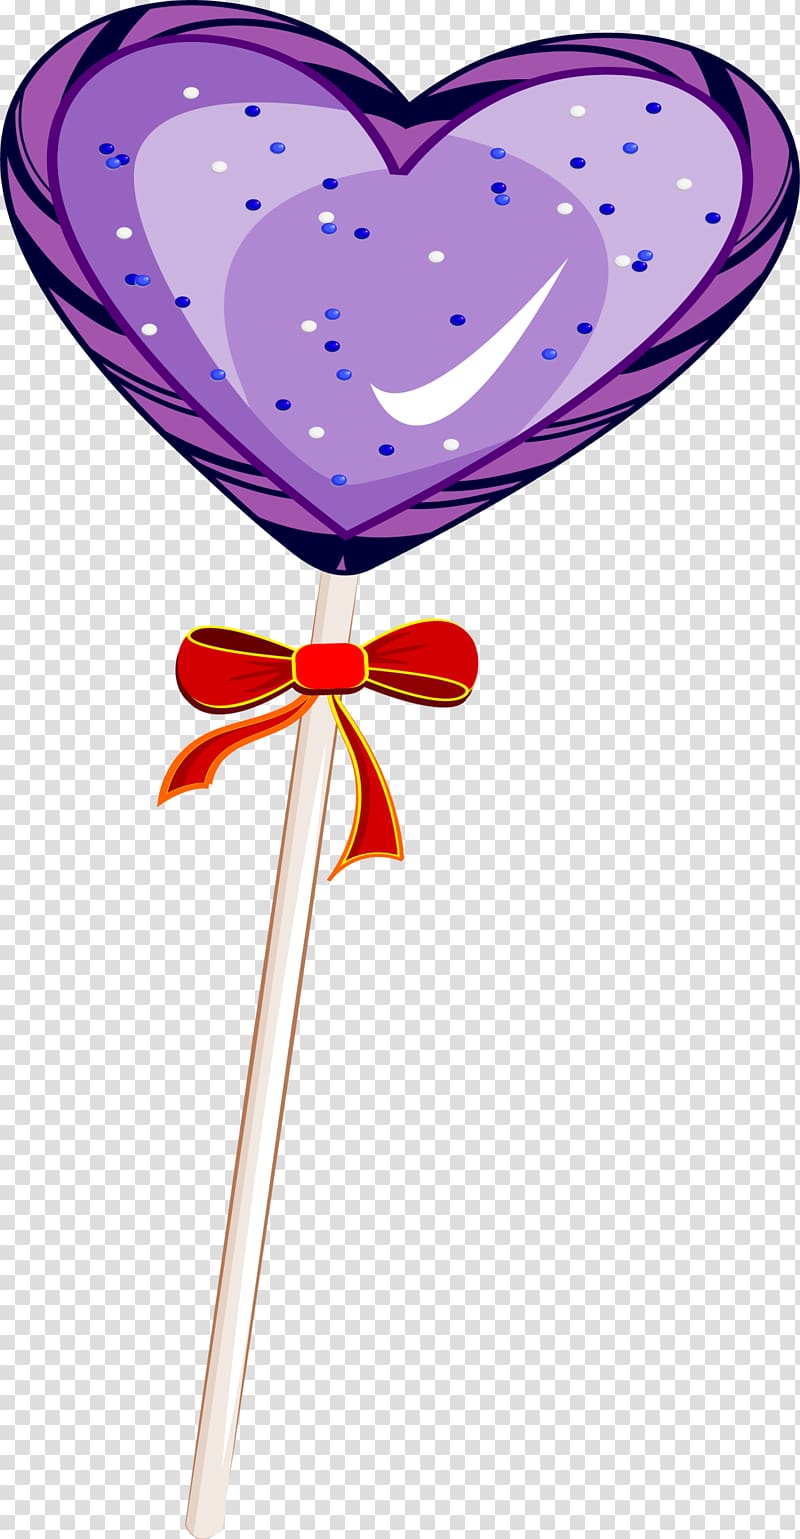 Lollipop , Love lollipops transparent background PNG clipart